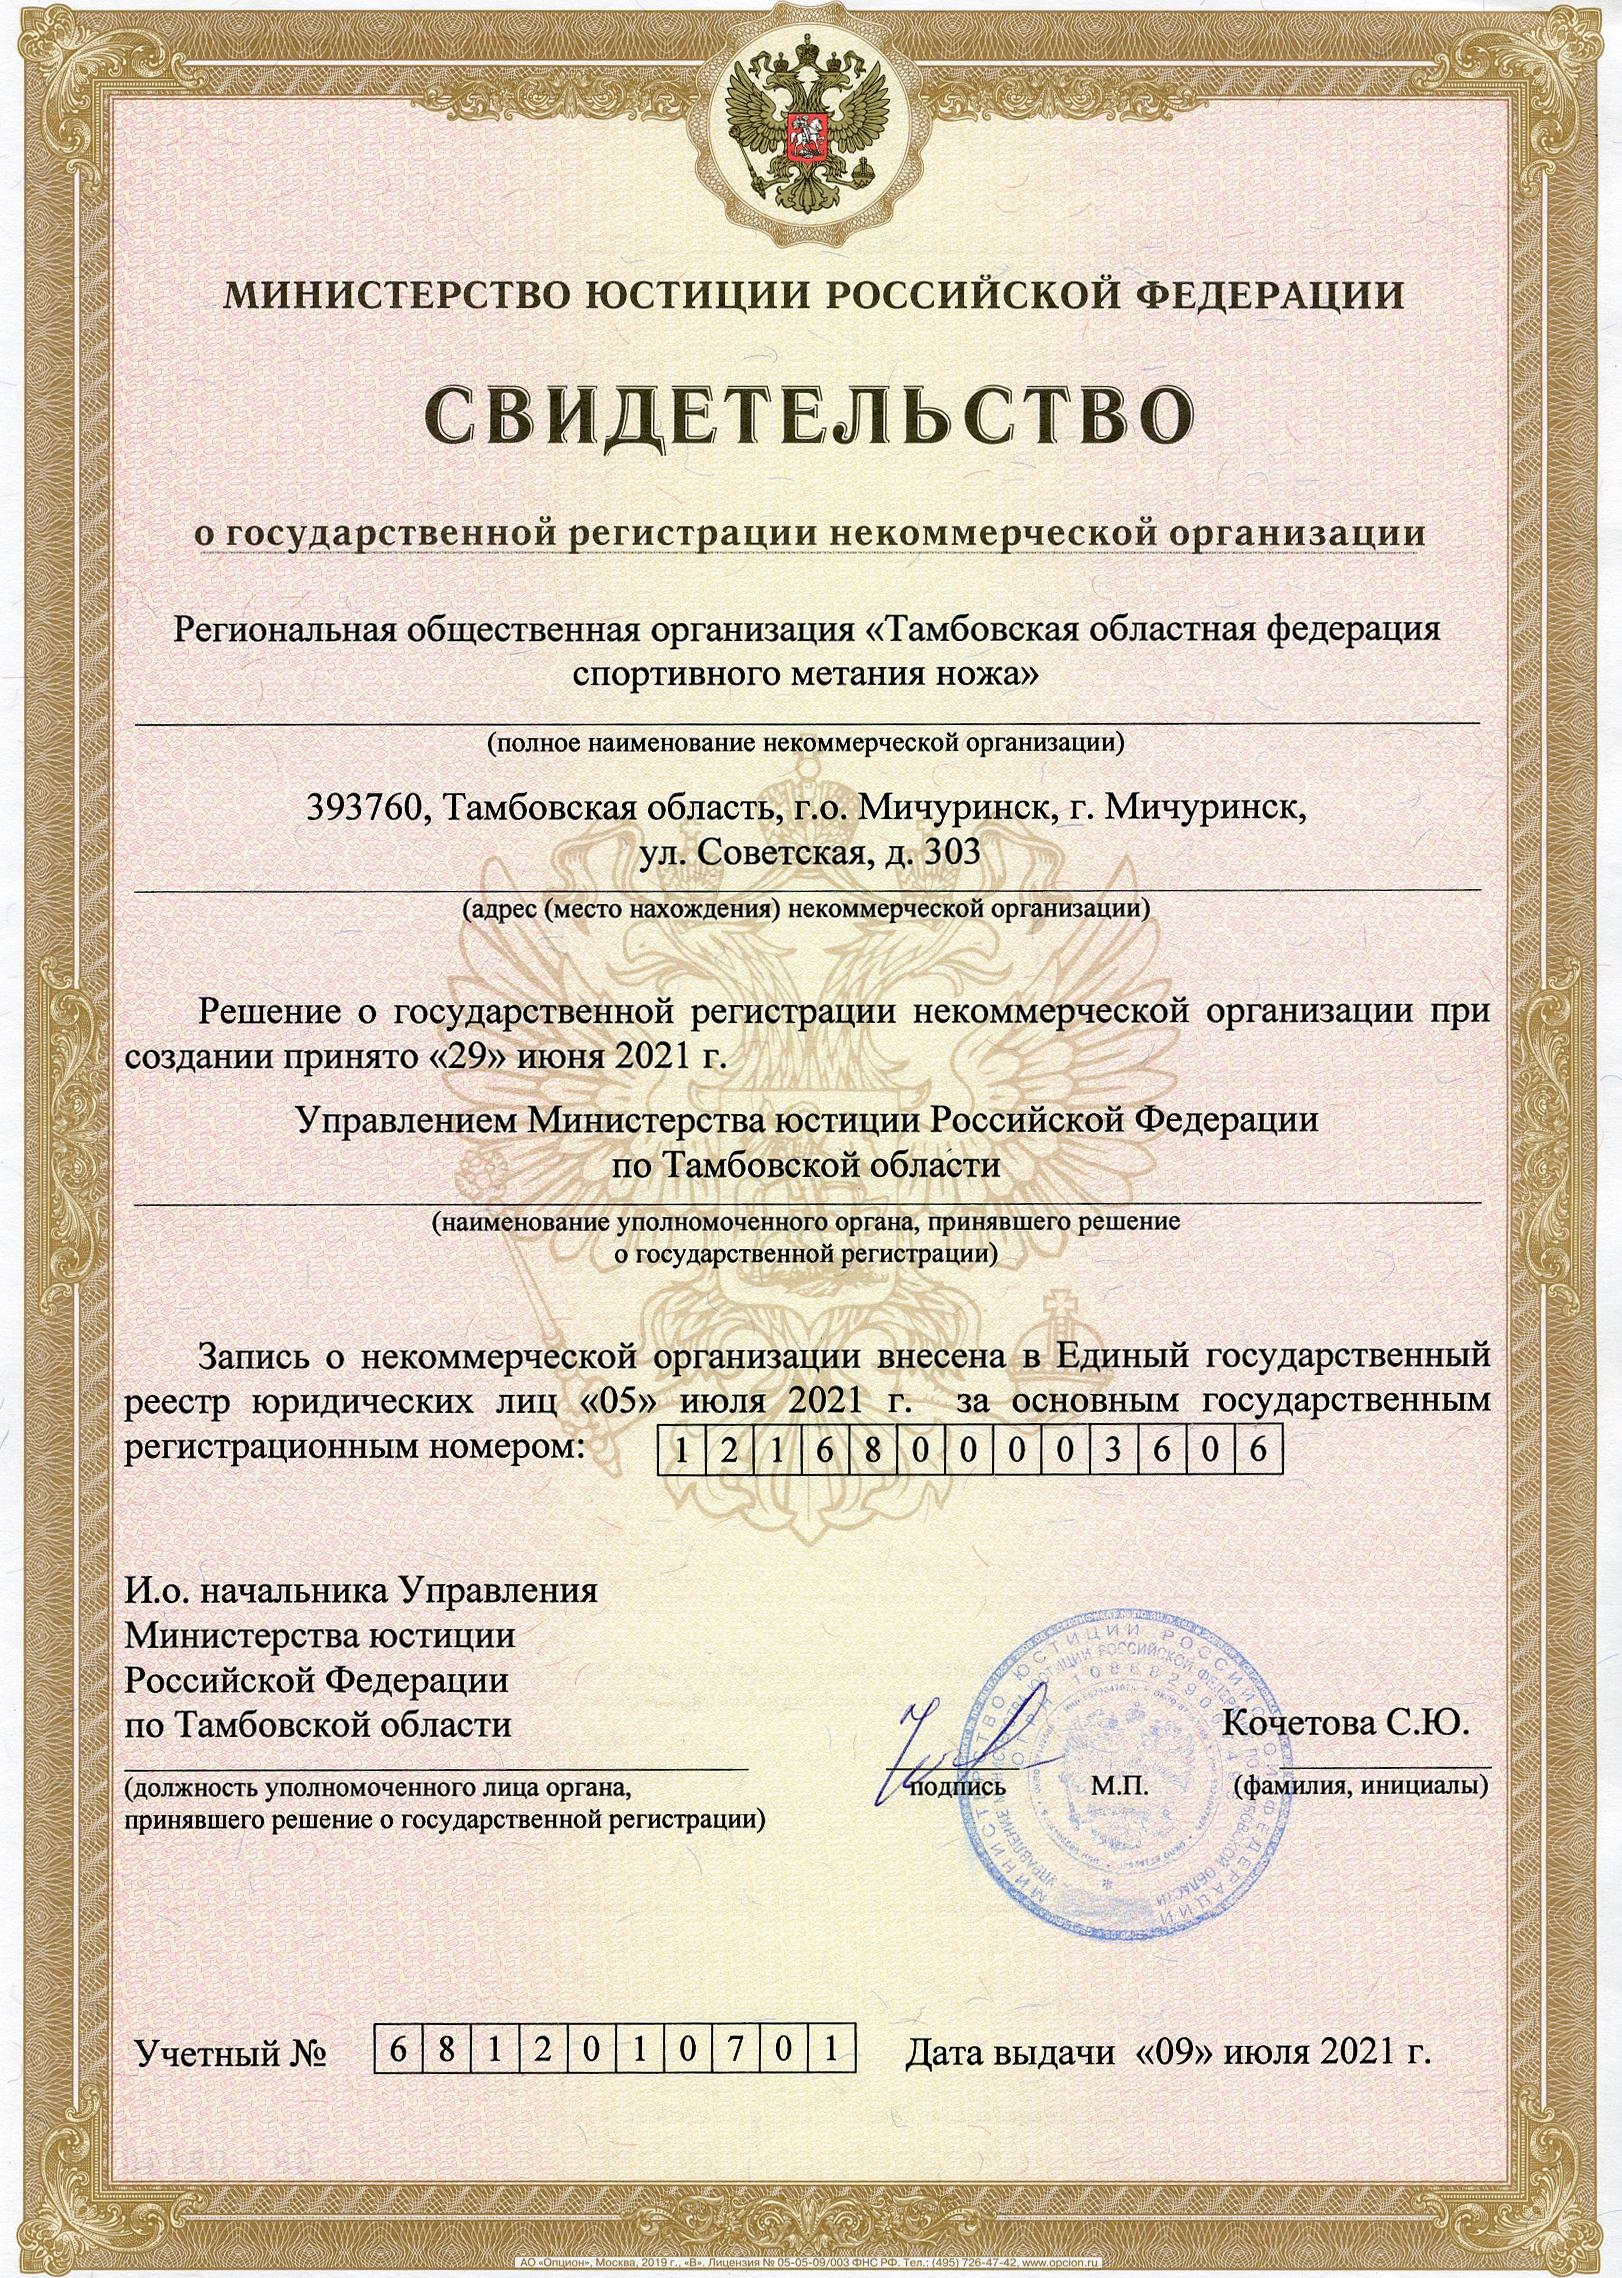 Свидетельство о регистрации Тамбовской областной федерации спортивного метания ножа.